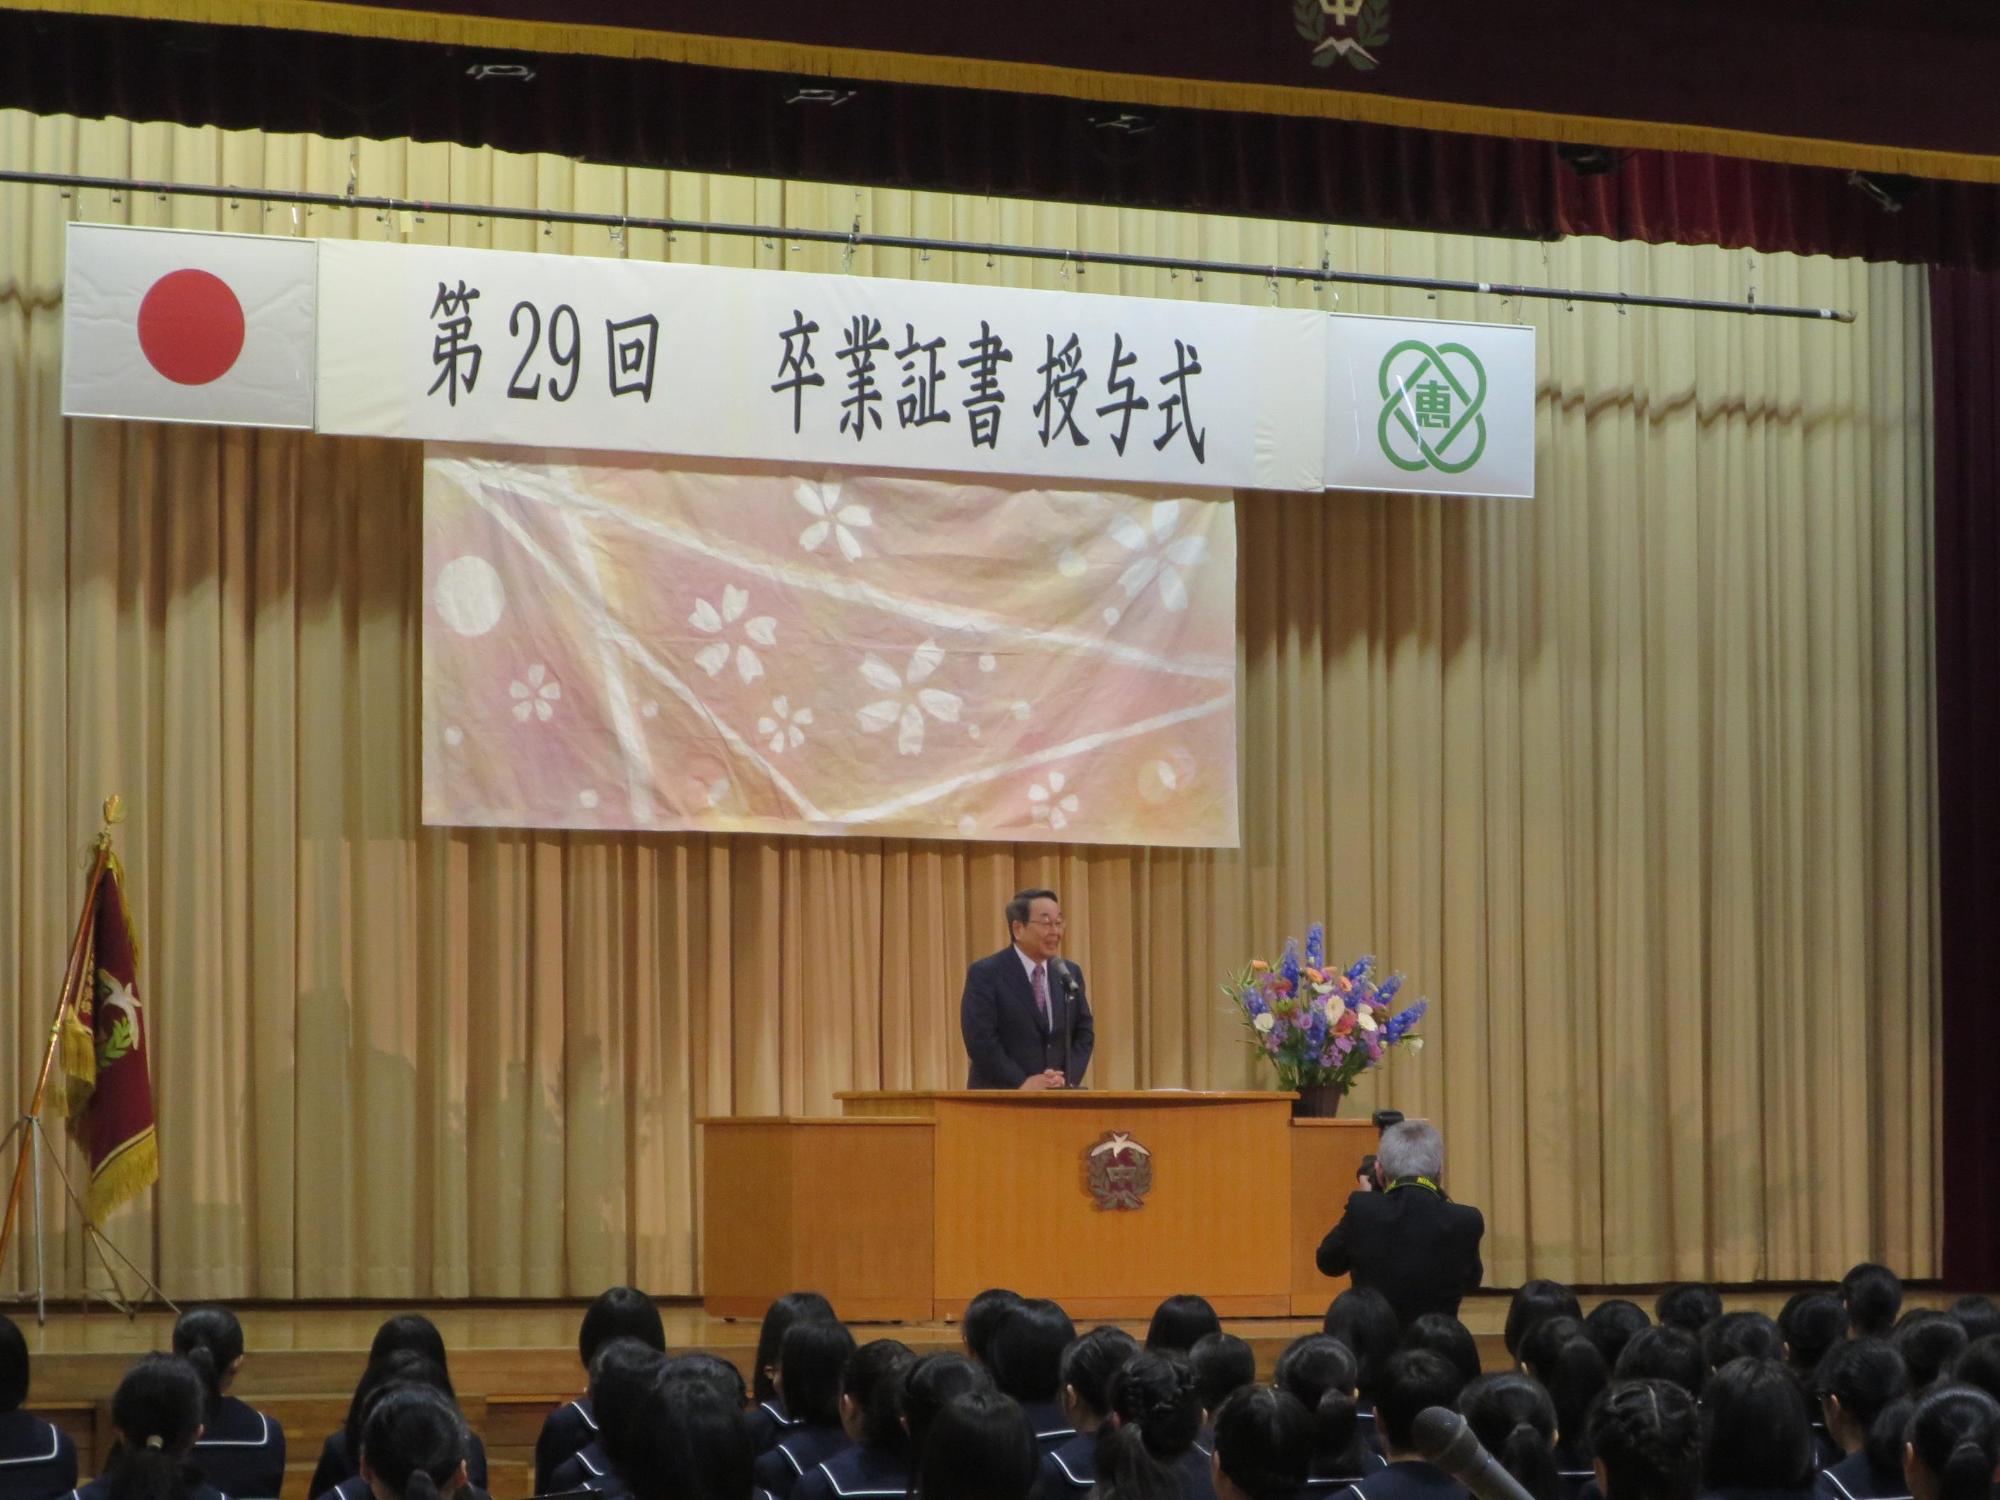 「恵み野中学校卒業証書授与式」にて挨拶をしている原田市長の写真